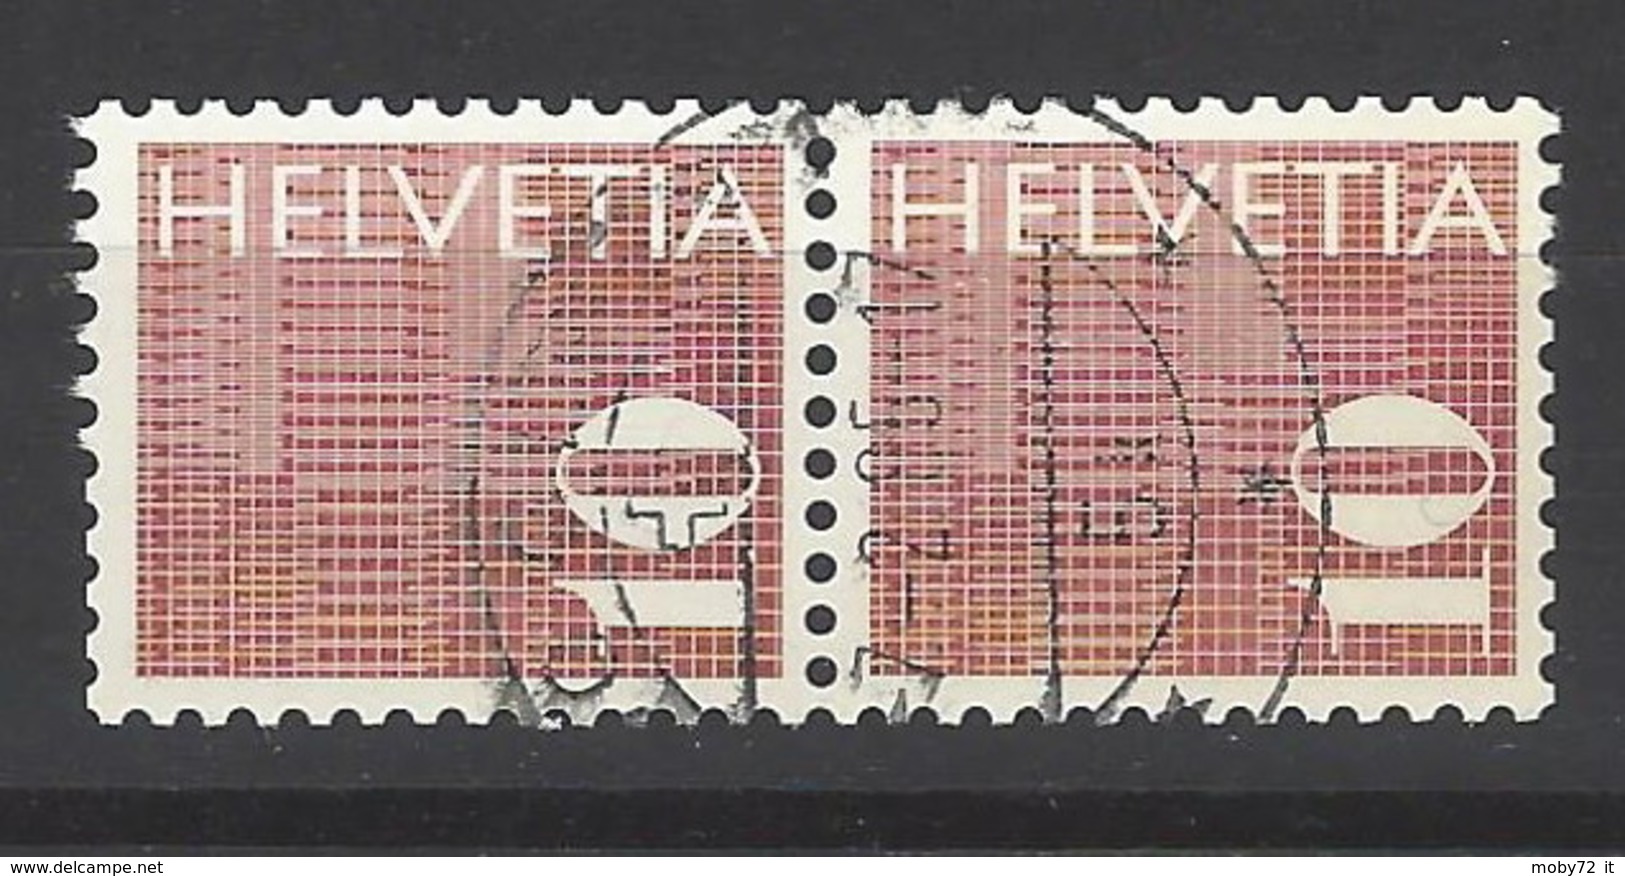 Svizzera - 1970 - Usato/used - Rollenmarken - Mi N. 933 - Rouleaux